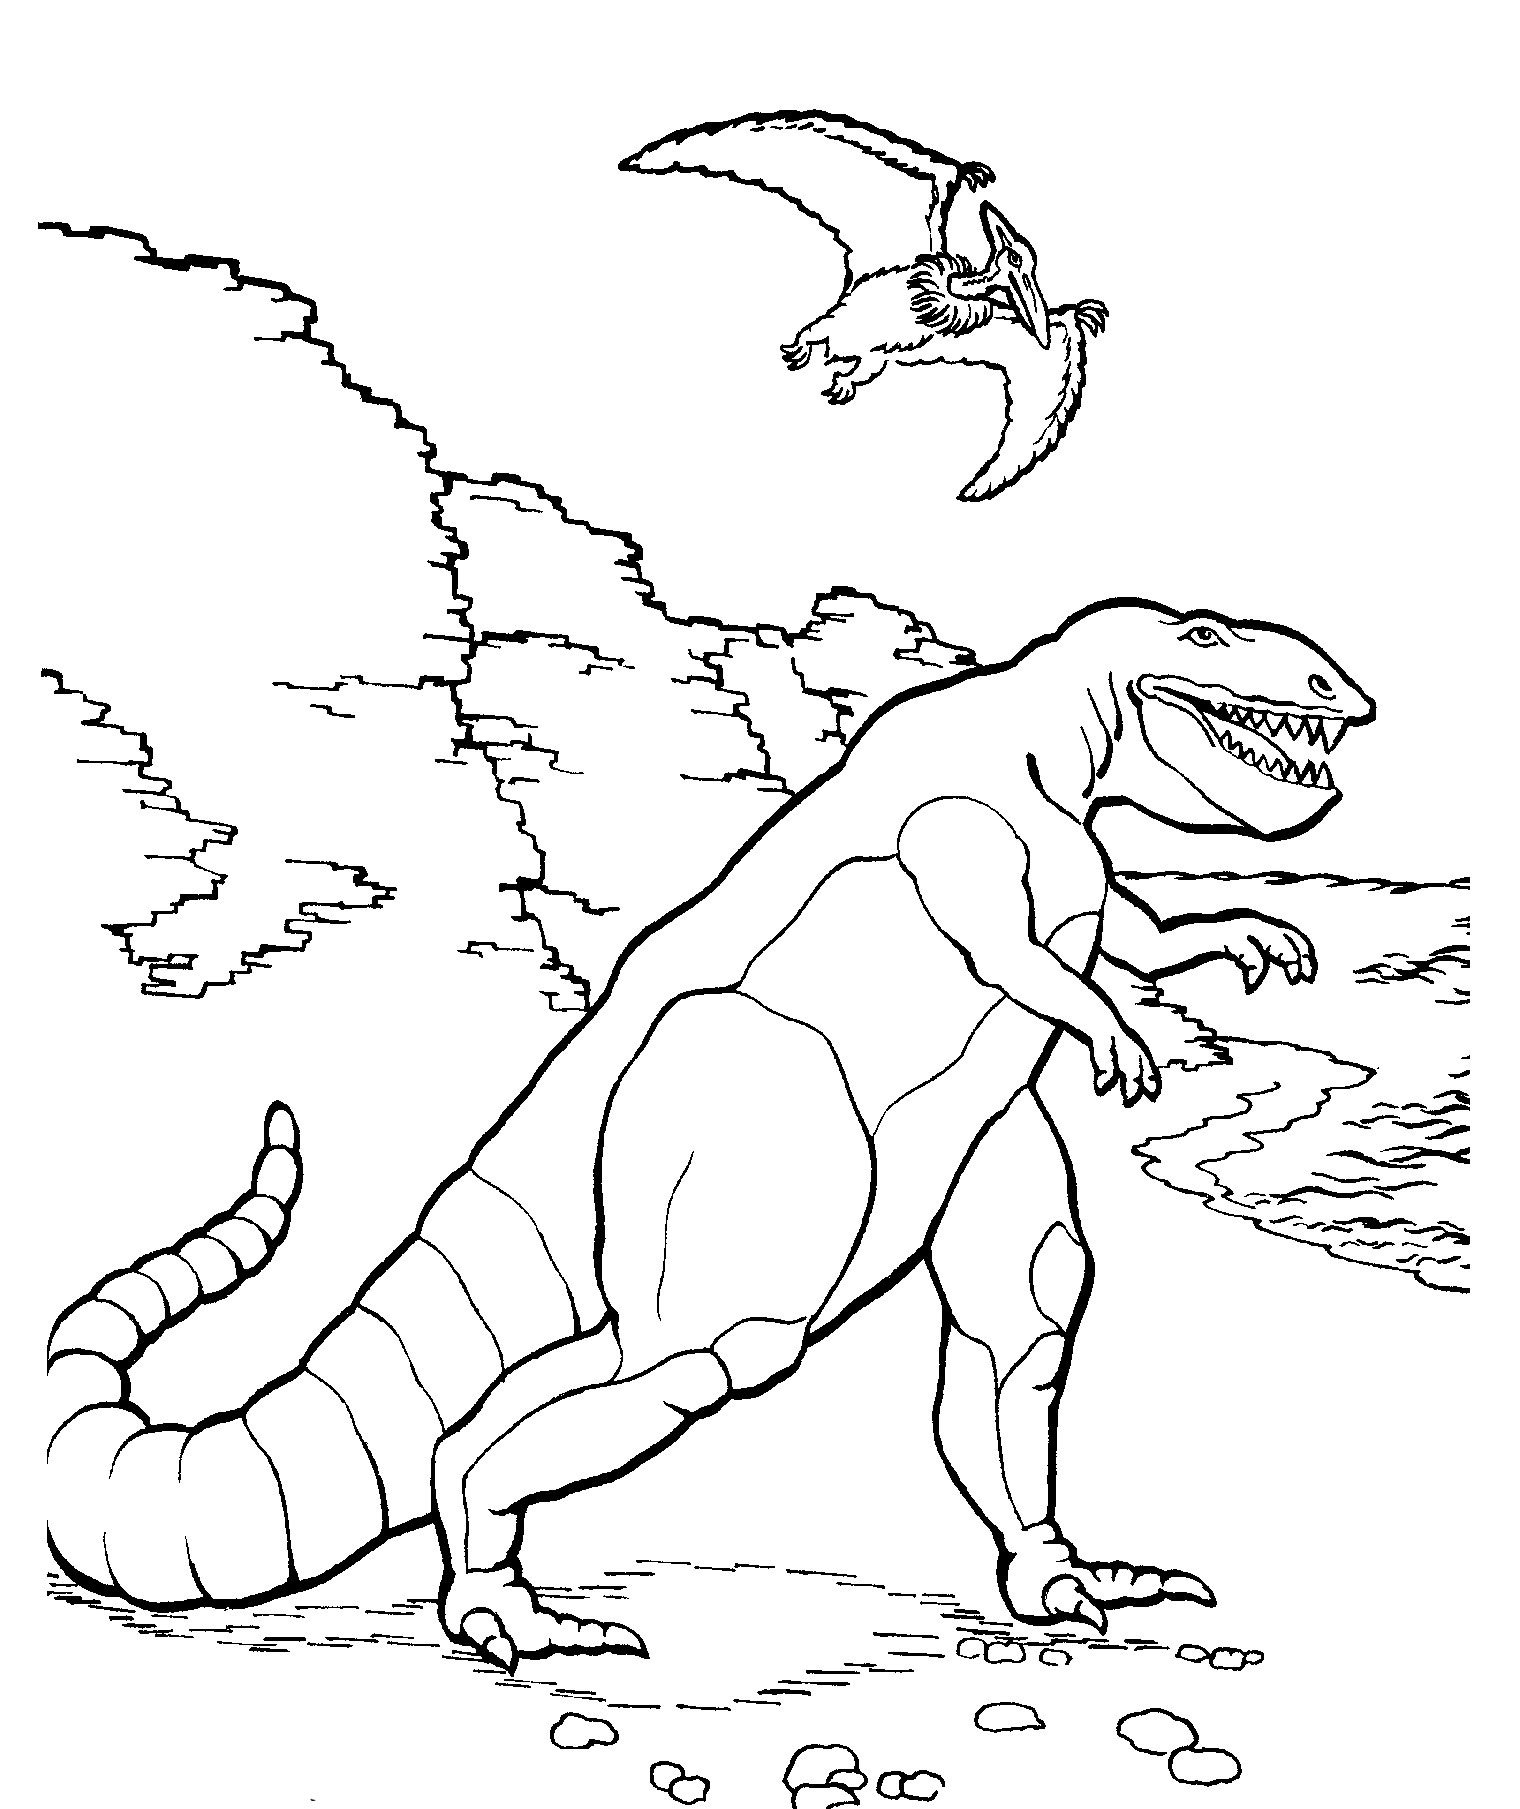 Динозавр раскраска распечатать а4. Тарбозавр раскраска динозавра. Раскраски для мальчиков Тарбозавр. Тарбозавр разукрашка. Динозавры / раскраска.